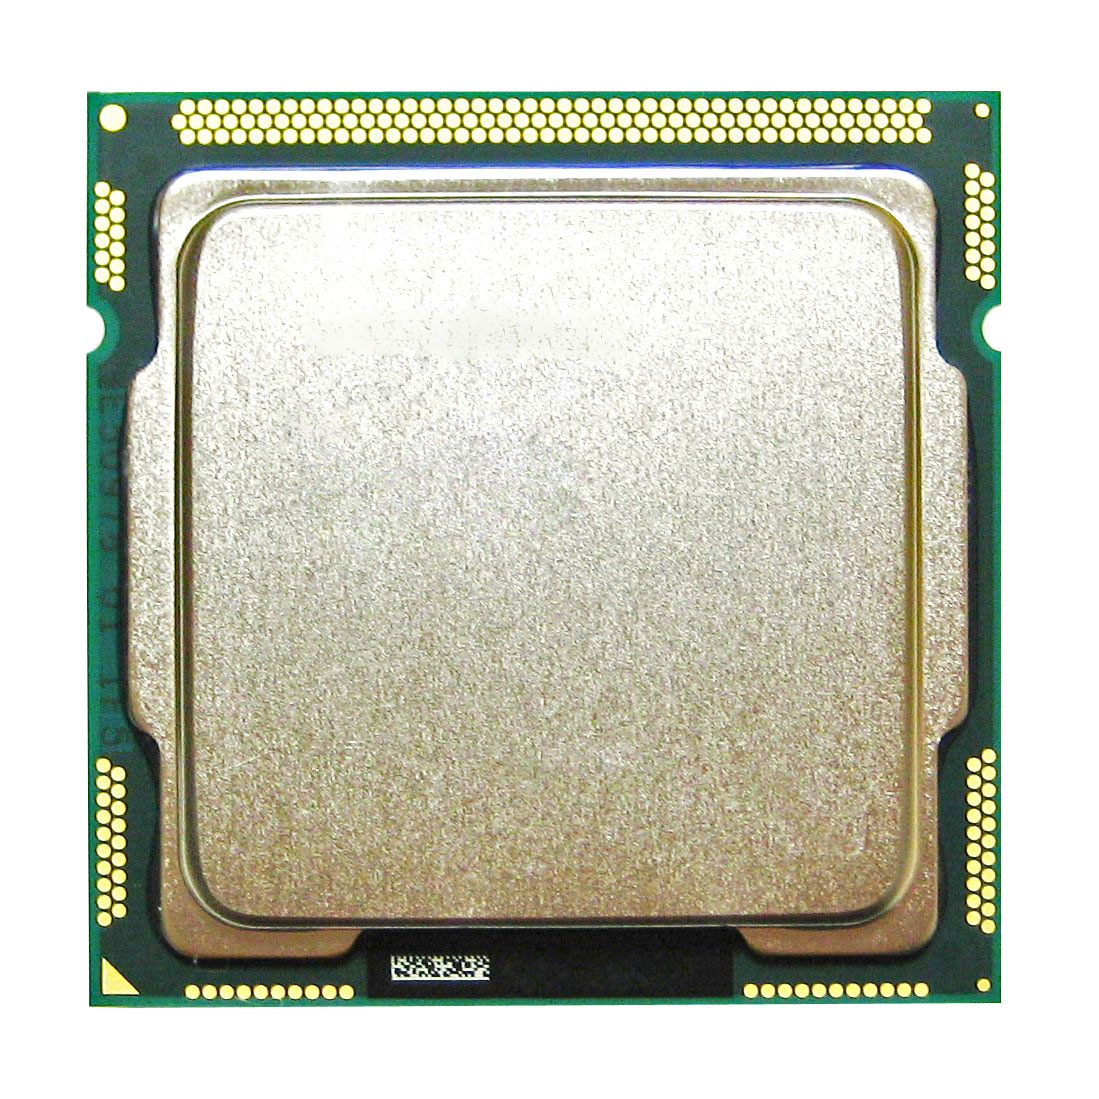 CM8062300834203 Intel Core i5-2500 Quad Core 3.30GHz 5.00GT/s DMI 6MB L3 Cache Socket LGA1155 Desktop Processor